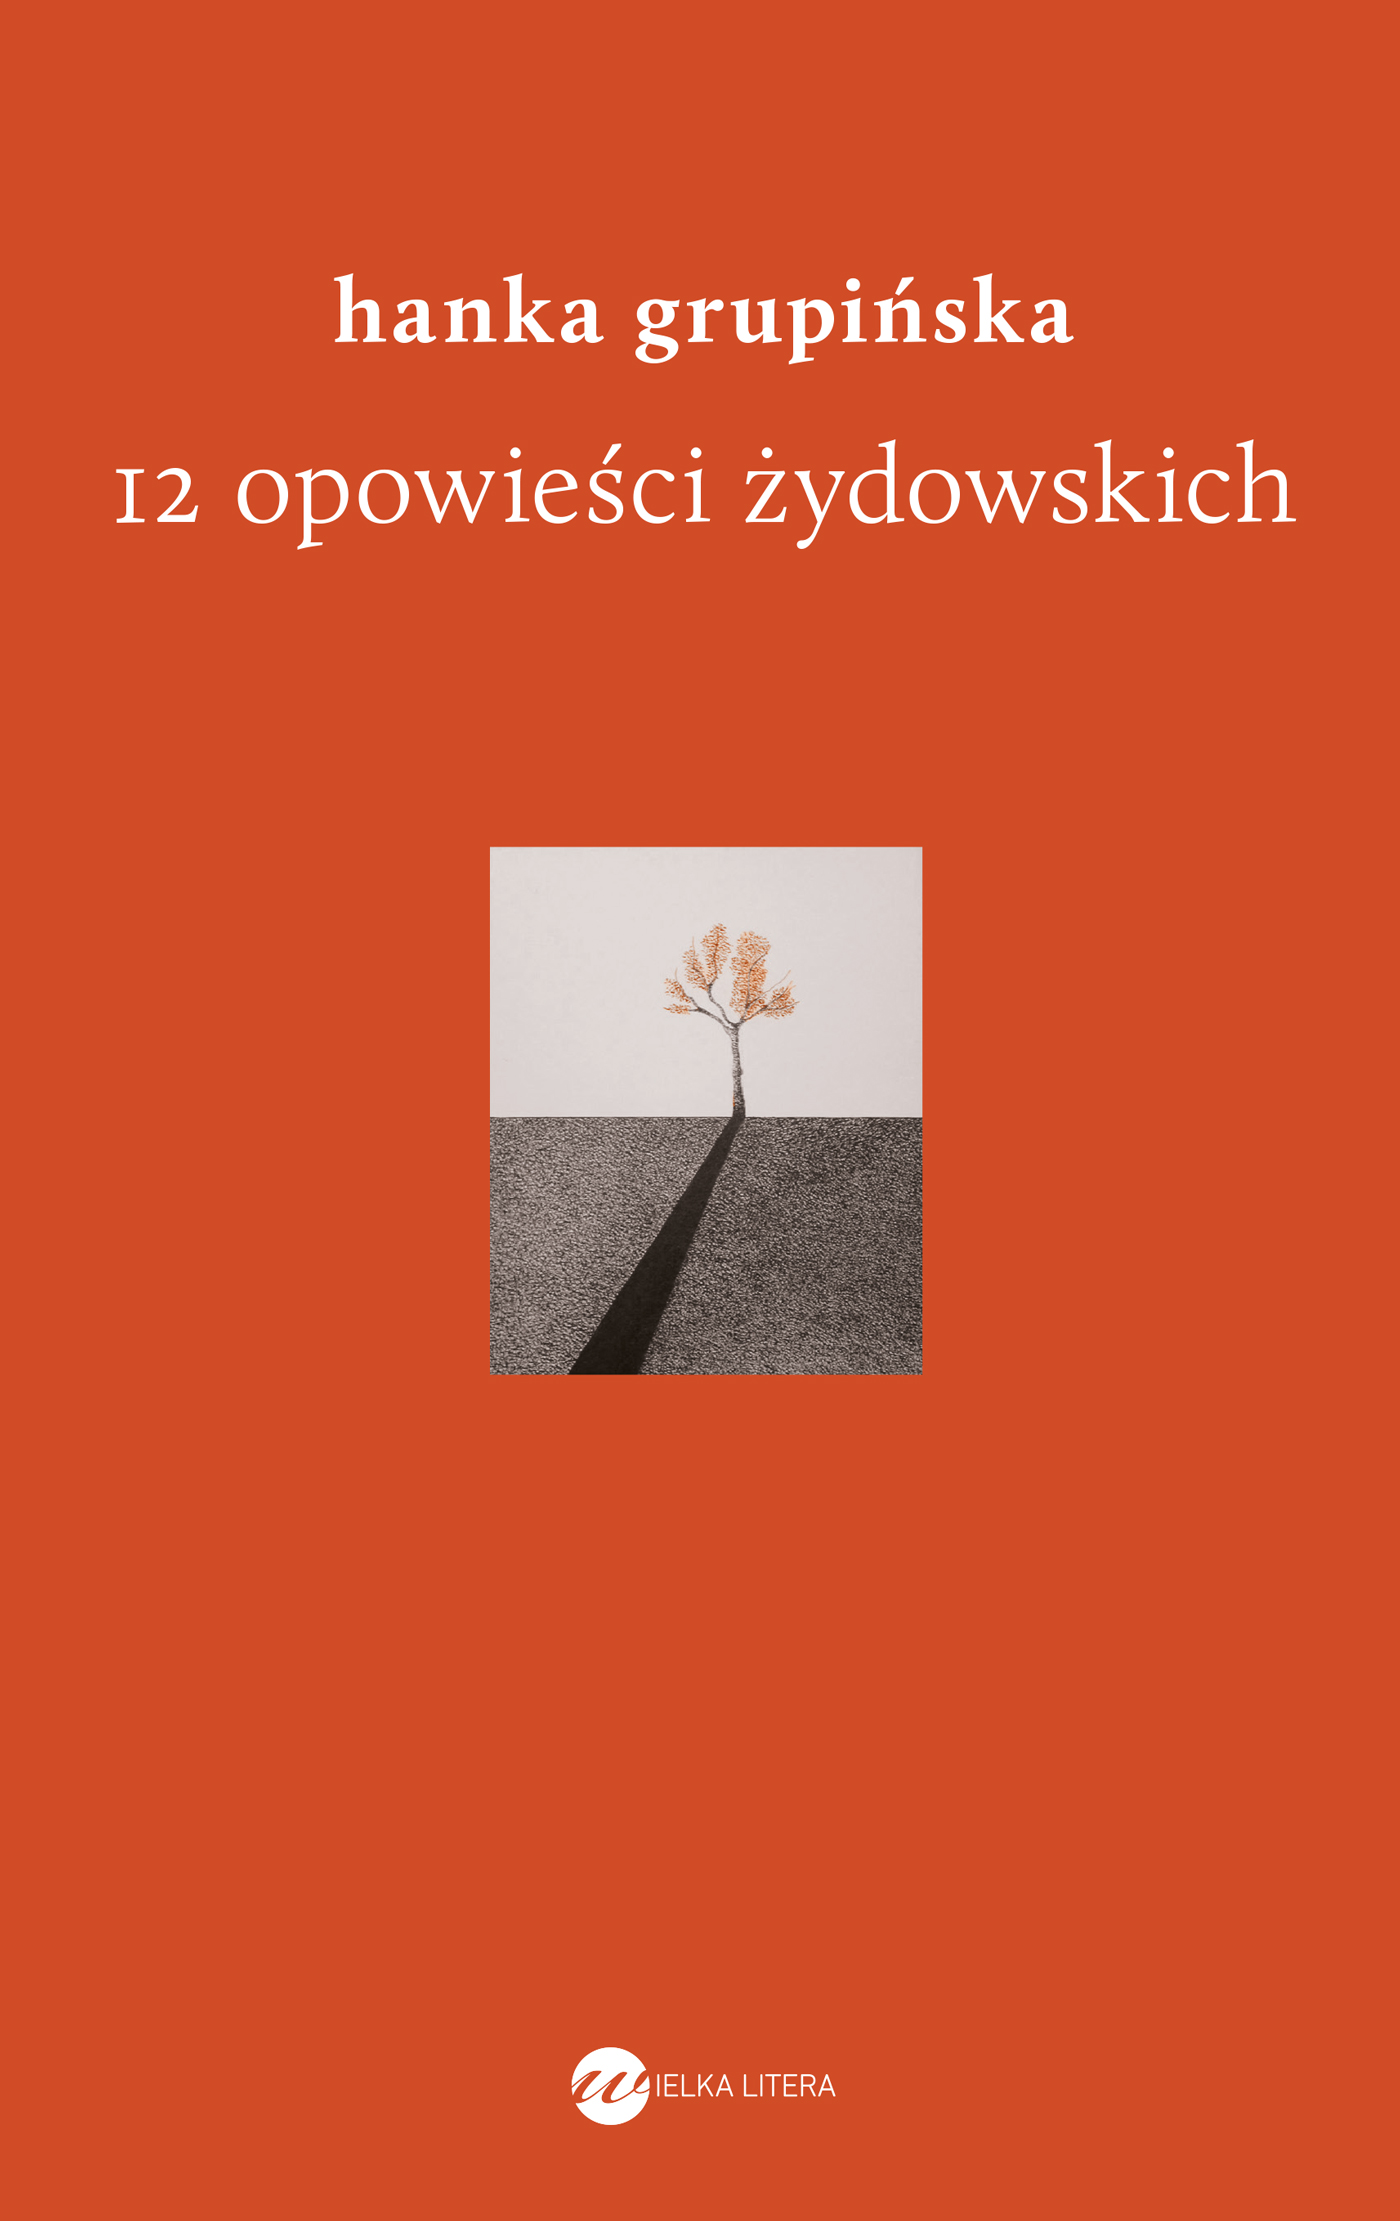 Okładka książki "12 opowieści żydowskich" Hanki Grupińskiej. Dominuje kolor czerwony, na środku obrazek o symbolicznym znaczeniu.